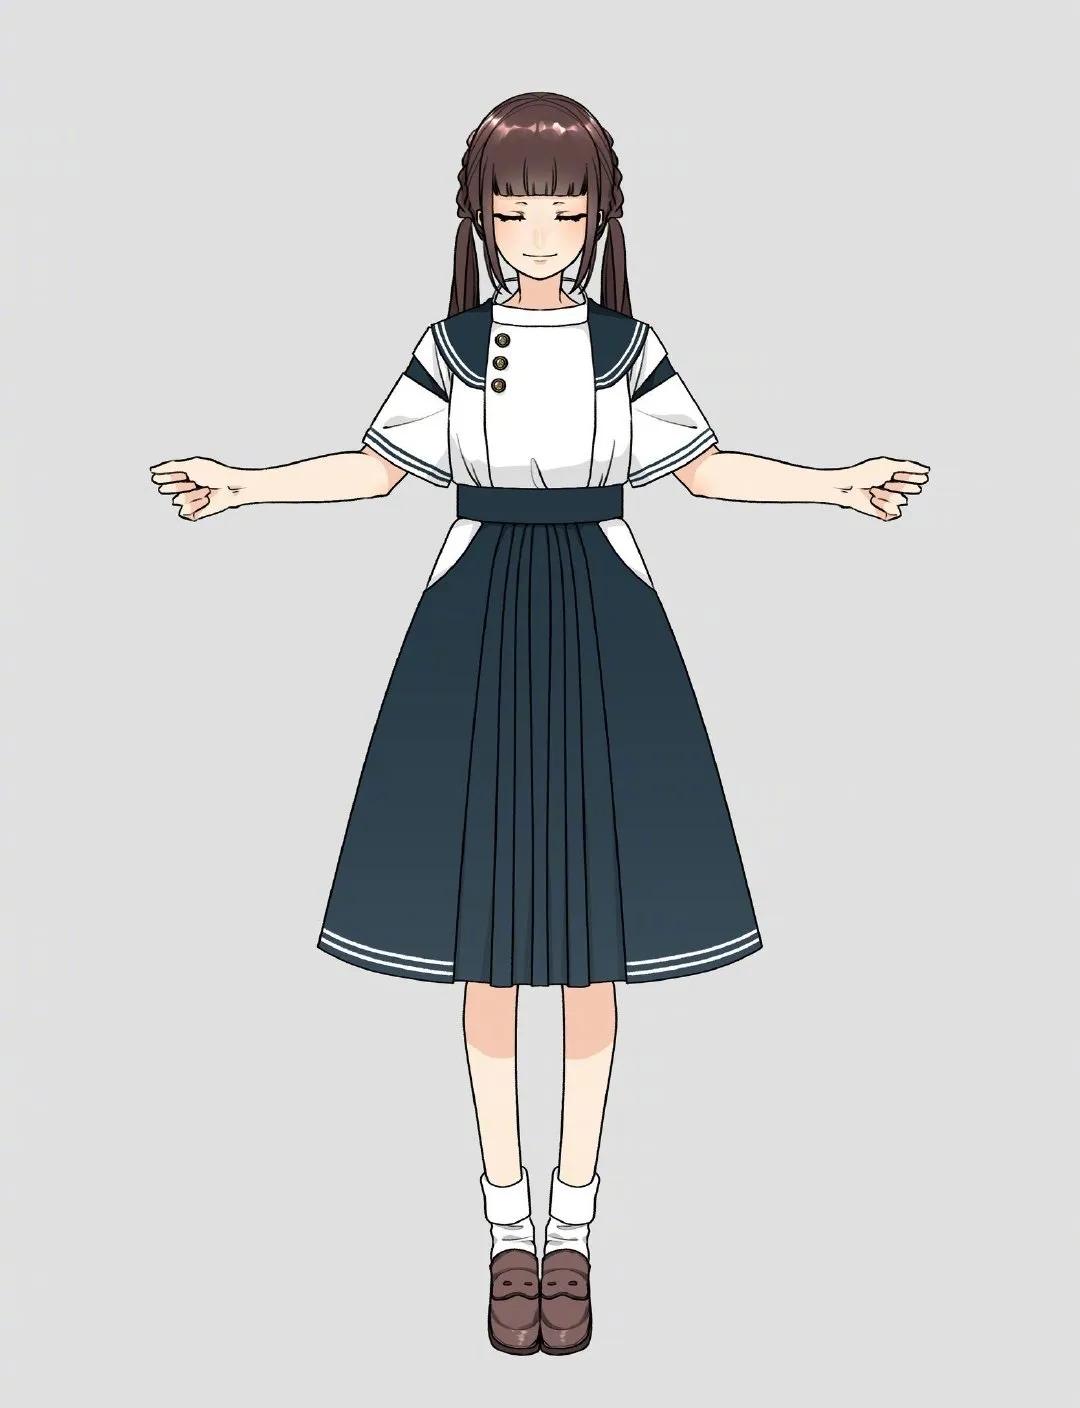 【cg原画插画教程】日系动漫头像女孩喜欢的jk制服手绘素材